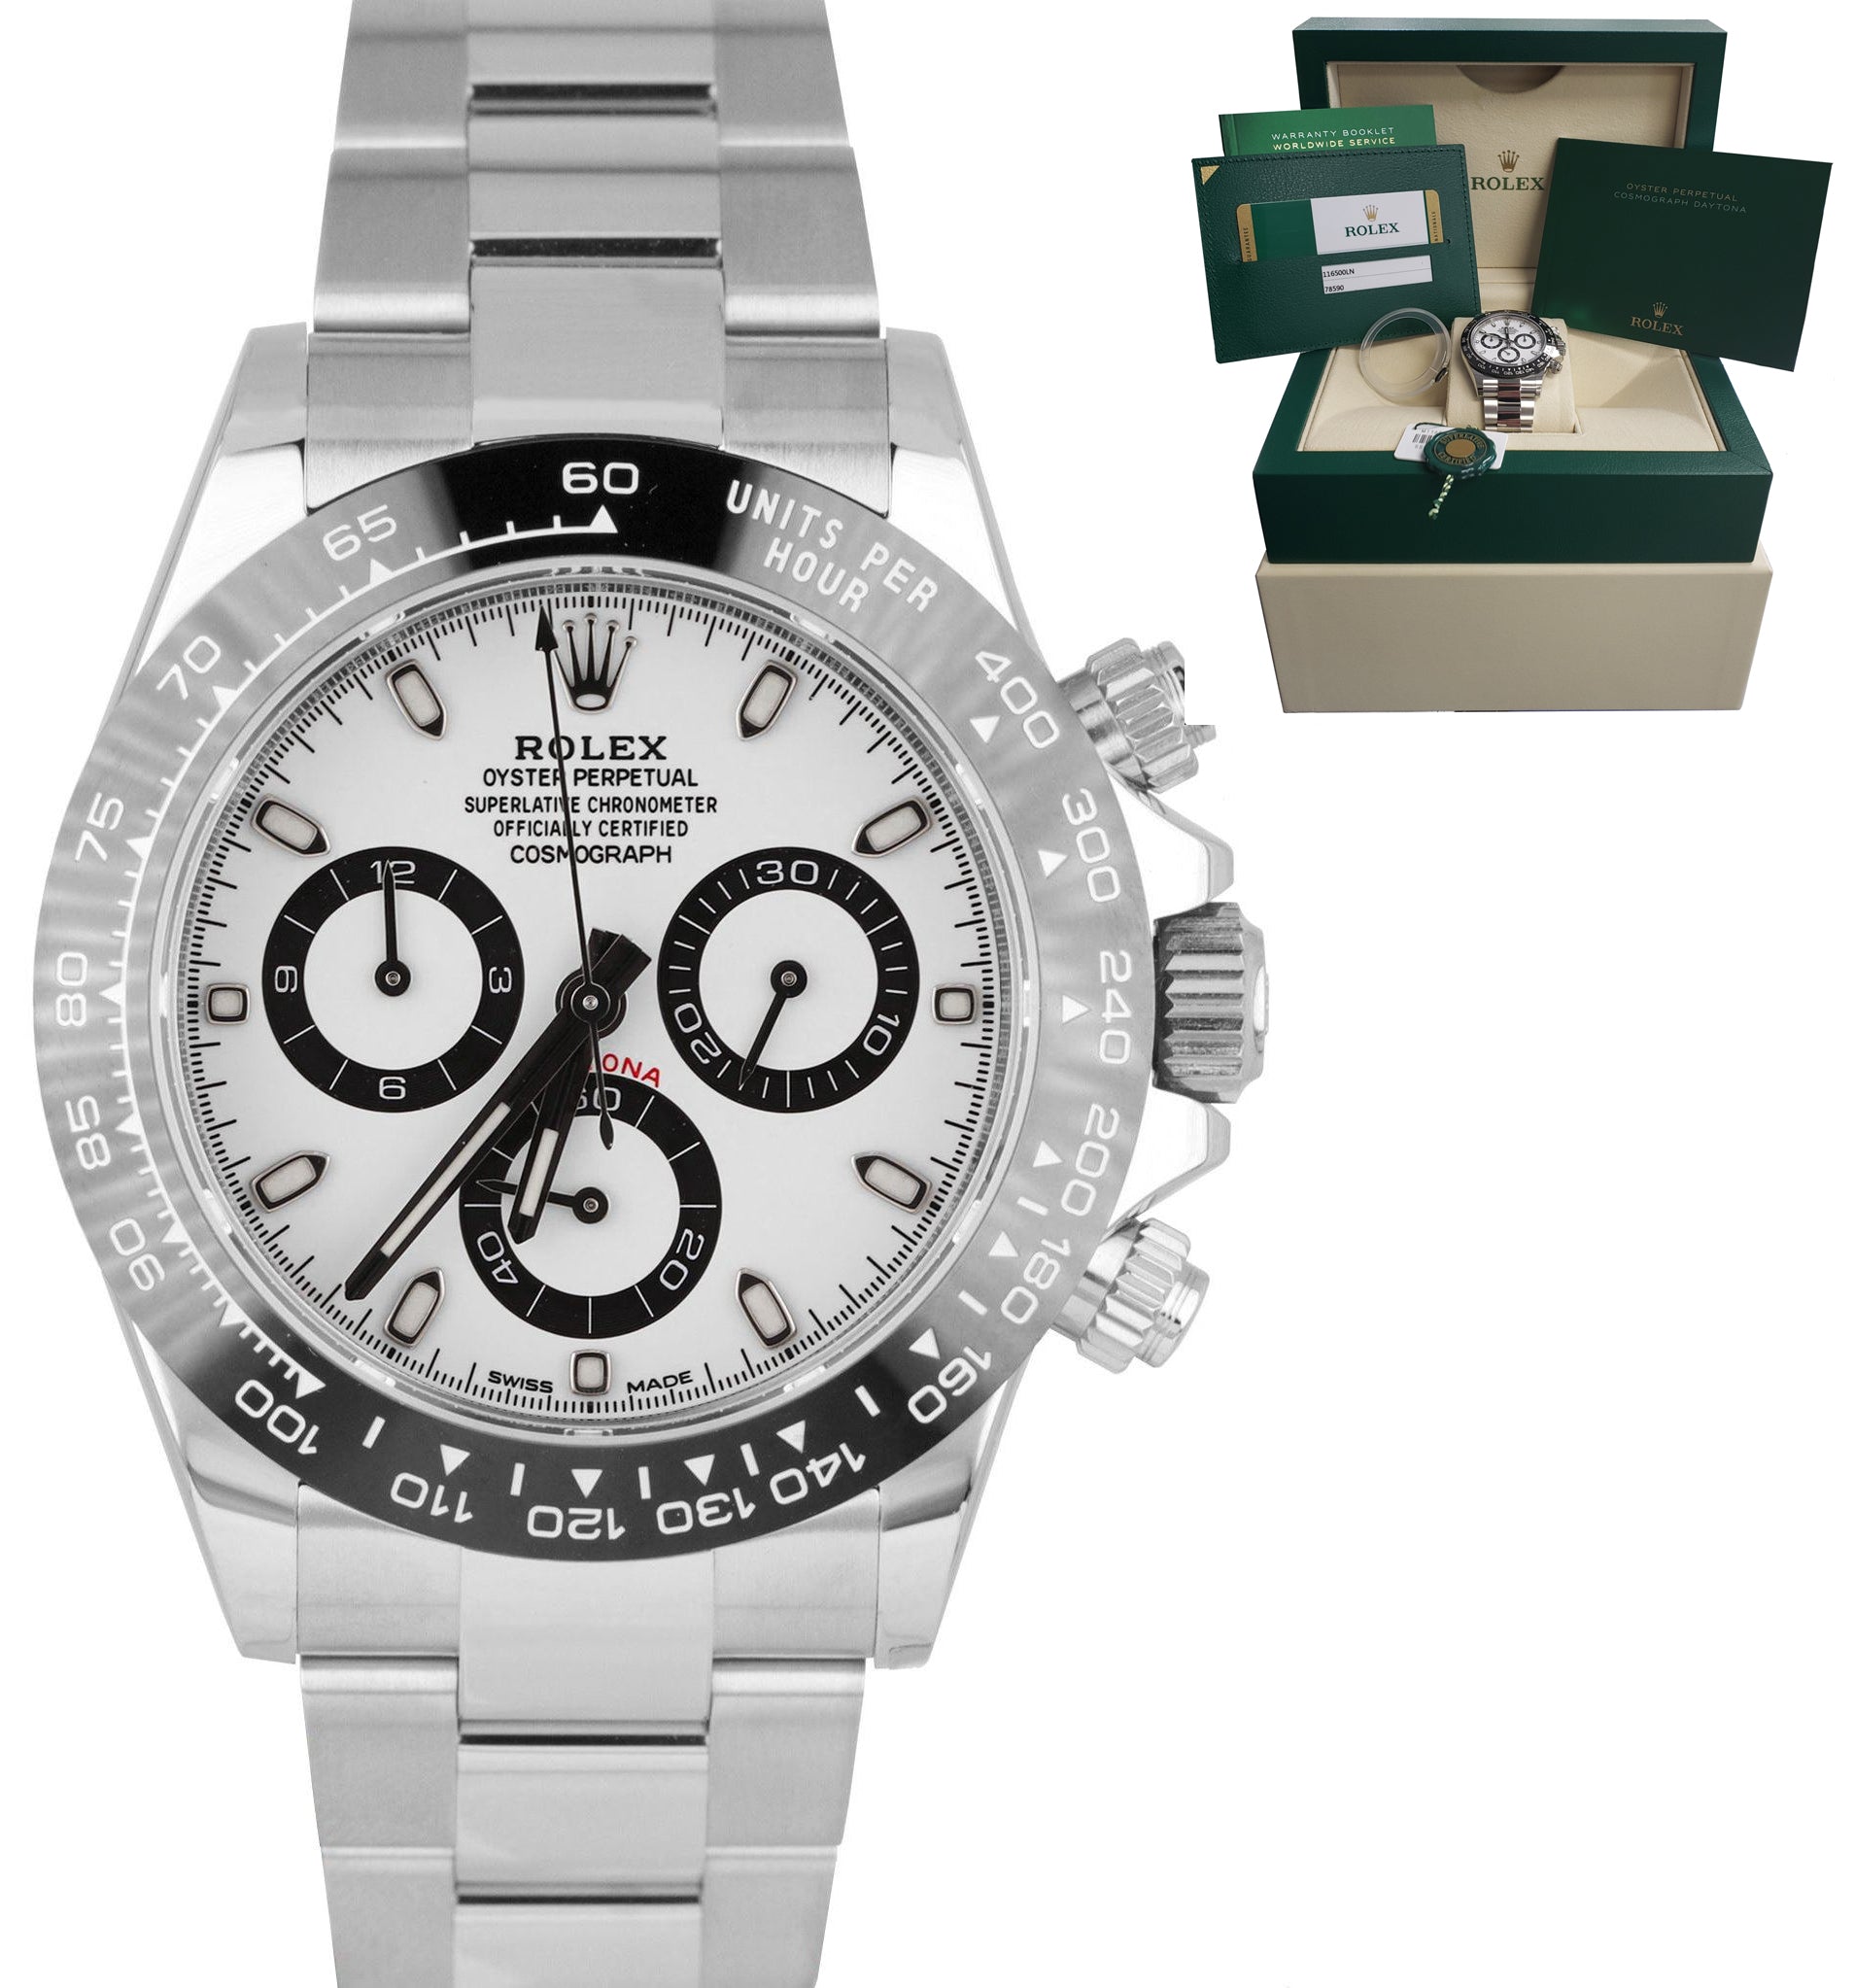 2019 UNWORN Rolex Daytona Cosmograph PANDA 116500 LN Ceramic White 40mm Watch